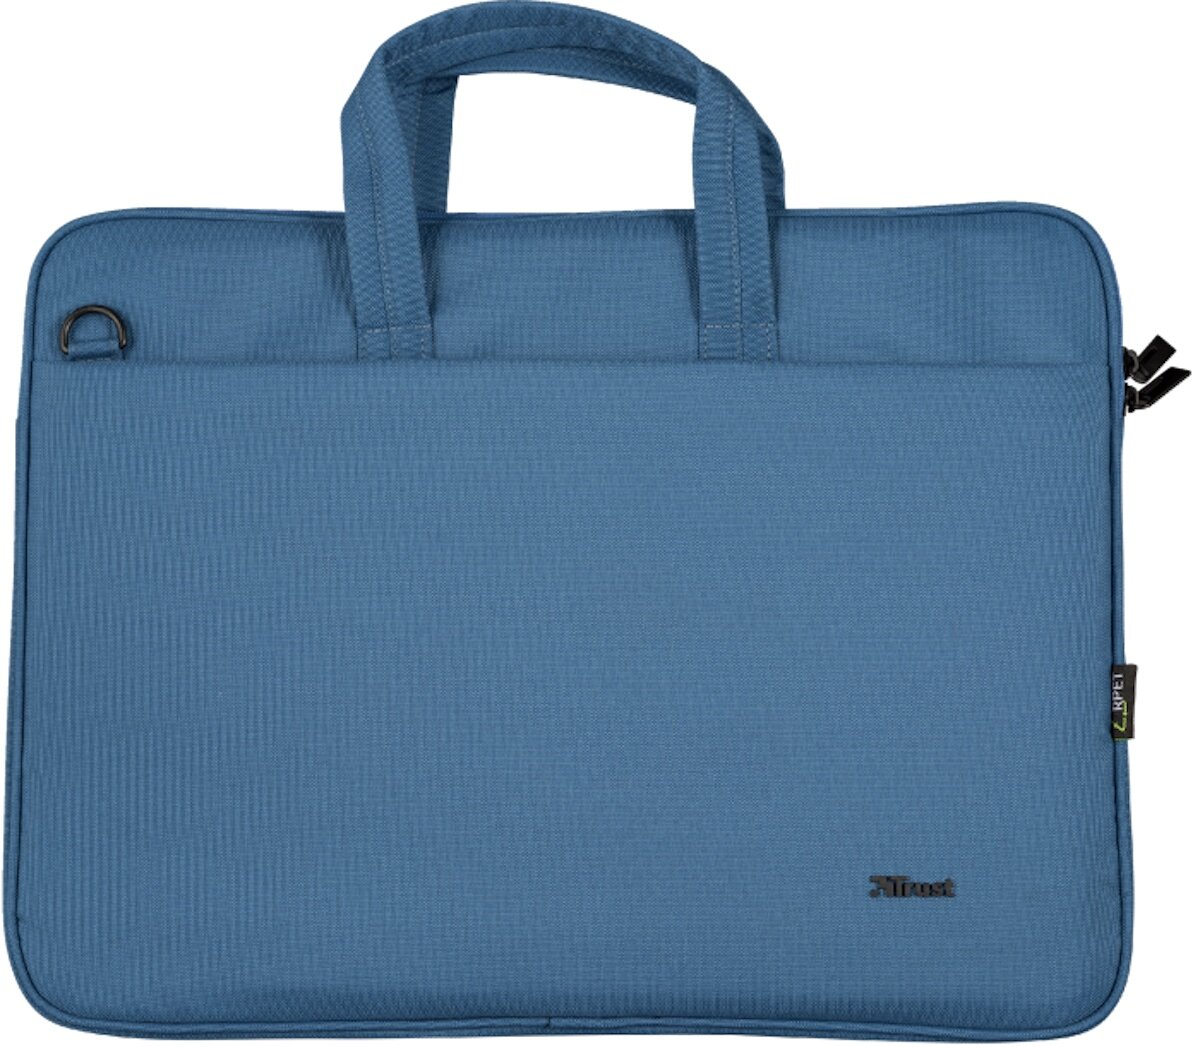 TRUST Bolonia Eco 15.6 cali Niebieski Torba na laptopa - niskie ceny i  opinie w Media Expert